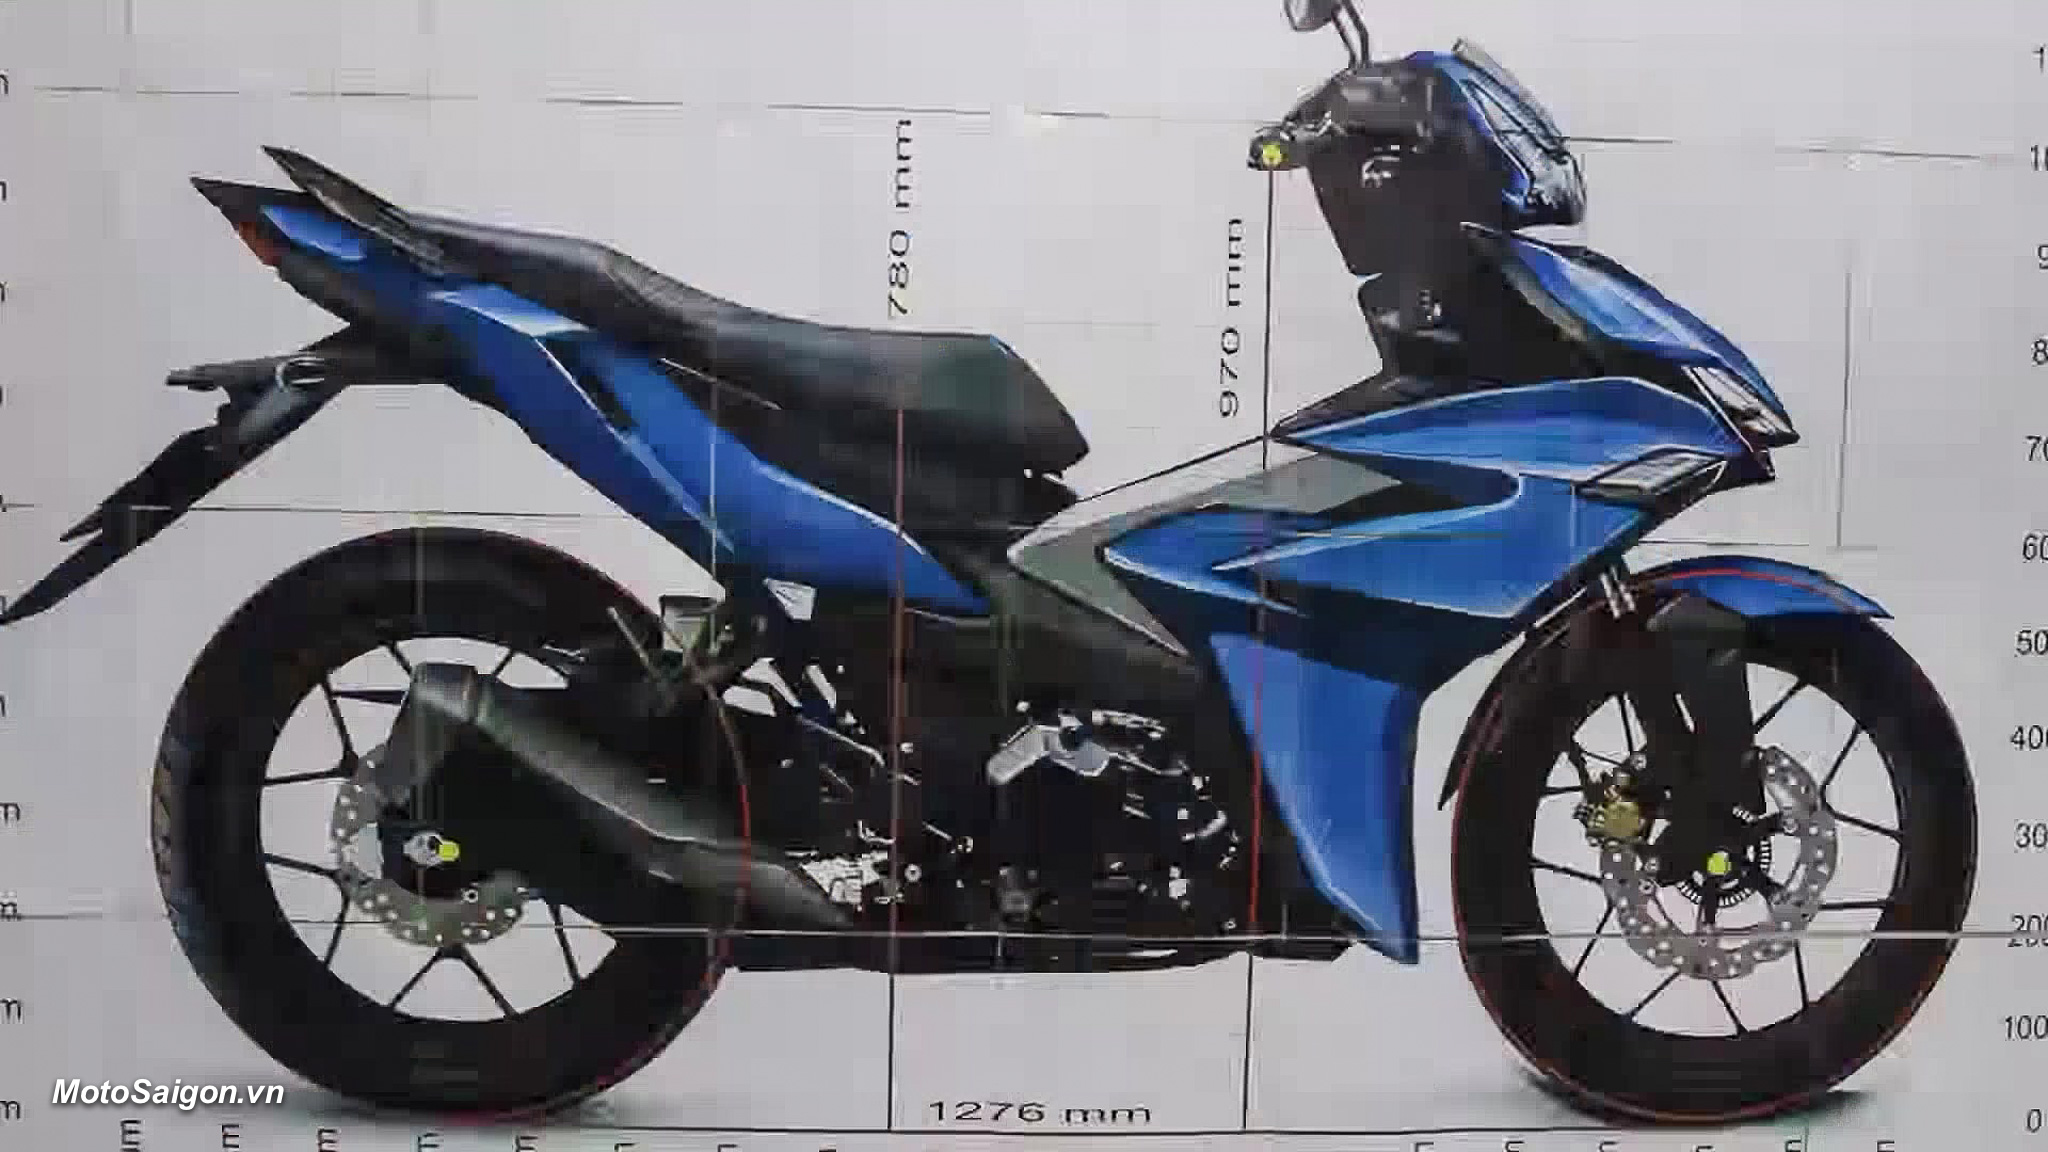 Yamaha Exciter 155 2023 xuất hiện đại lý khiến Honda Winner X xuống giá  thảm bại